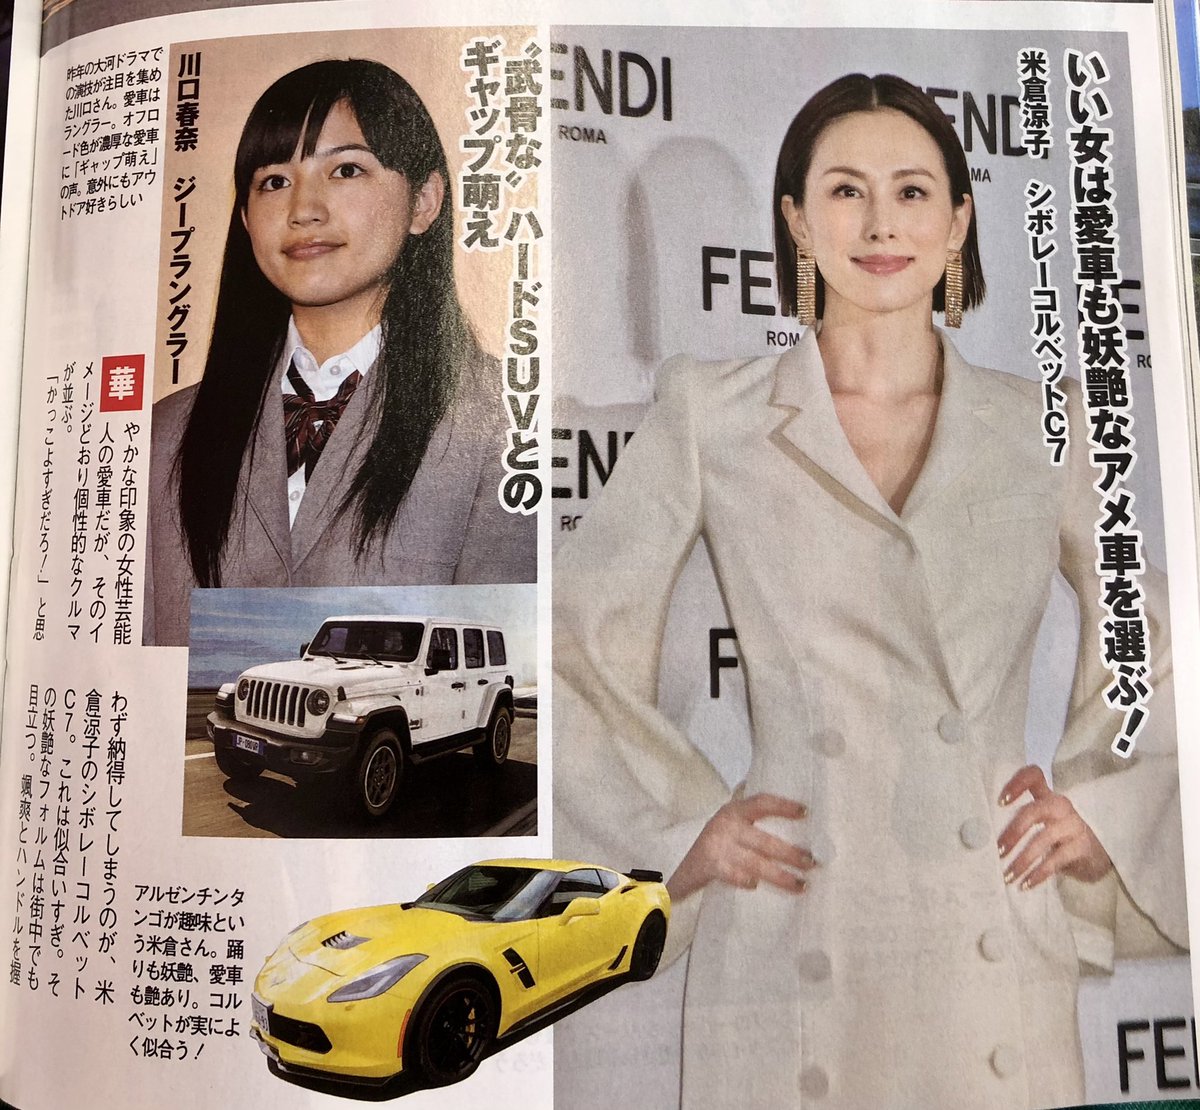 松田次生 Tsugio Matsuda ベストカーの記事で 有名人の愛車 紹介が 米倉涼子さんが シボレーコルベットc7に乗ってる またマニアックな車に乗ってますね 乗ってる所を見てみたい 女性のスポーツカー 格好いい T Co Ji5wz0qlvs Twitter